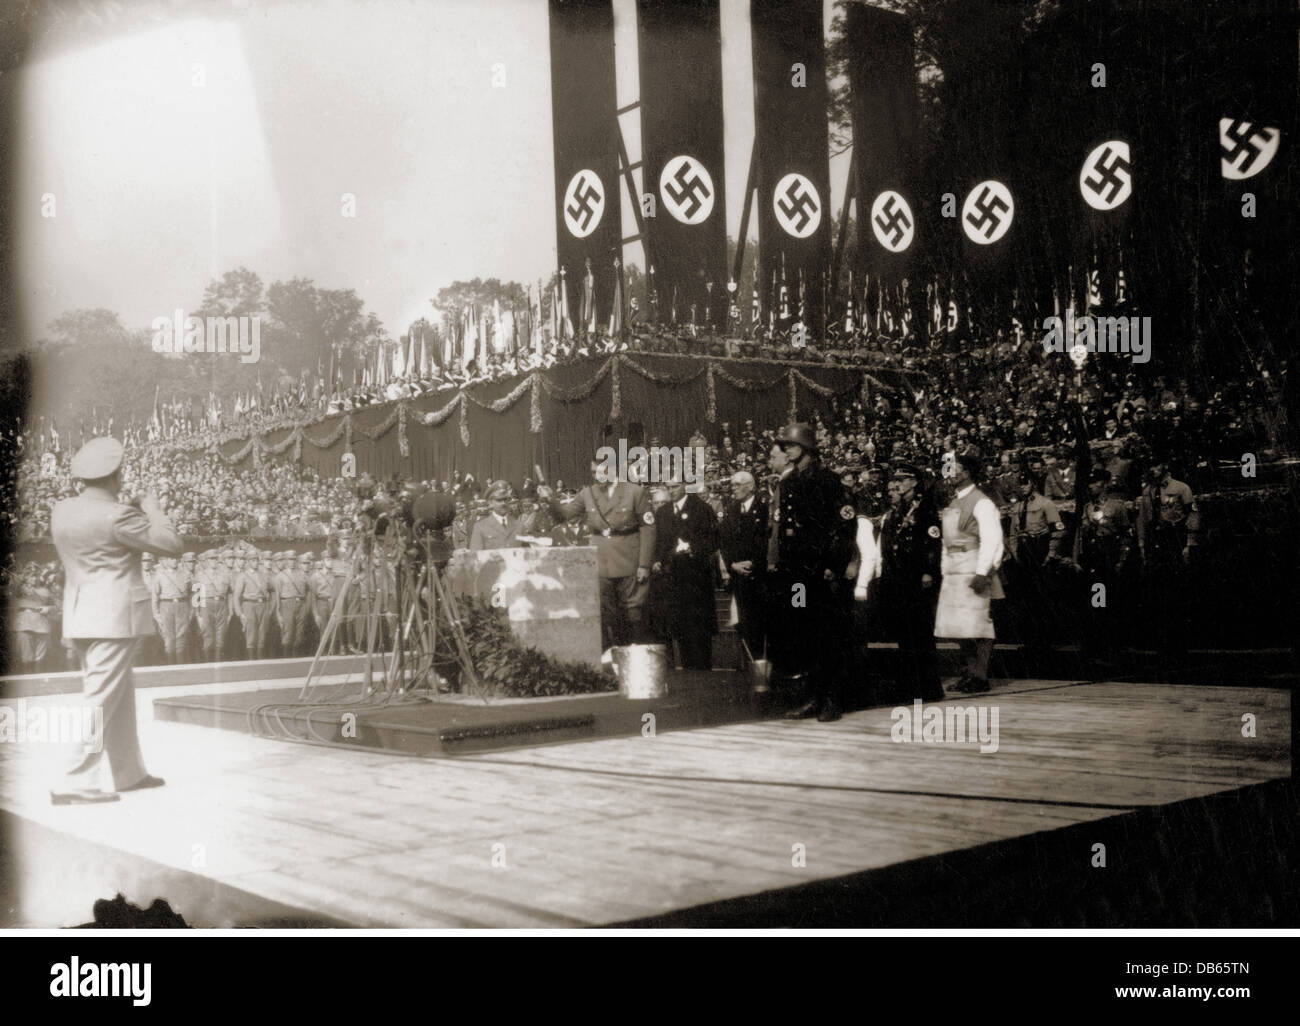 National-socialisme, architecture, 'Haus der Deutschen Kunst', Munich, posant la pierre angulaire par le chancelier de Reich Adolf Hitler, 15.10.1933, droits additionnels-Clearences-non disponible Banque D'Images